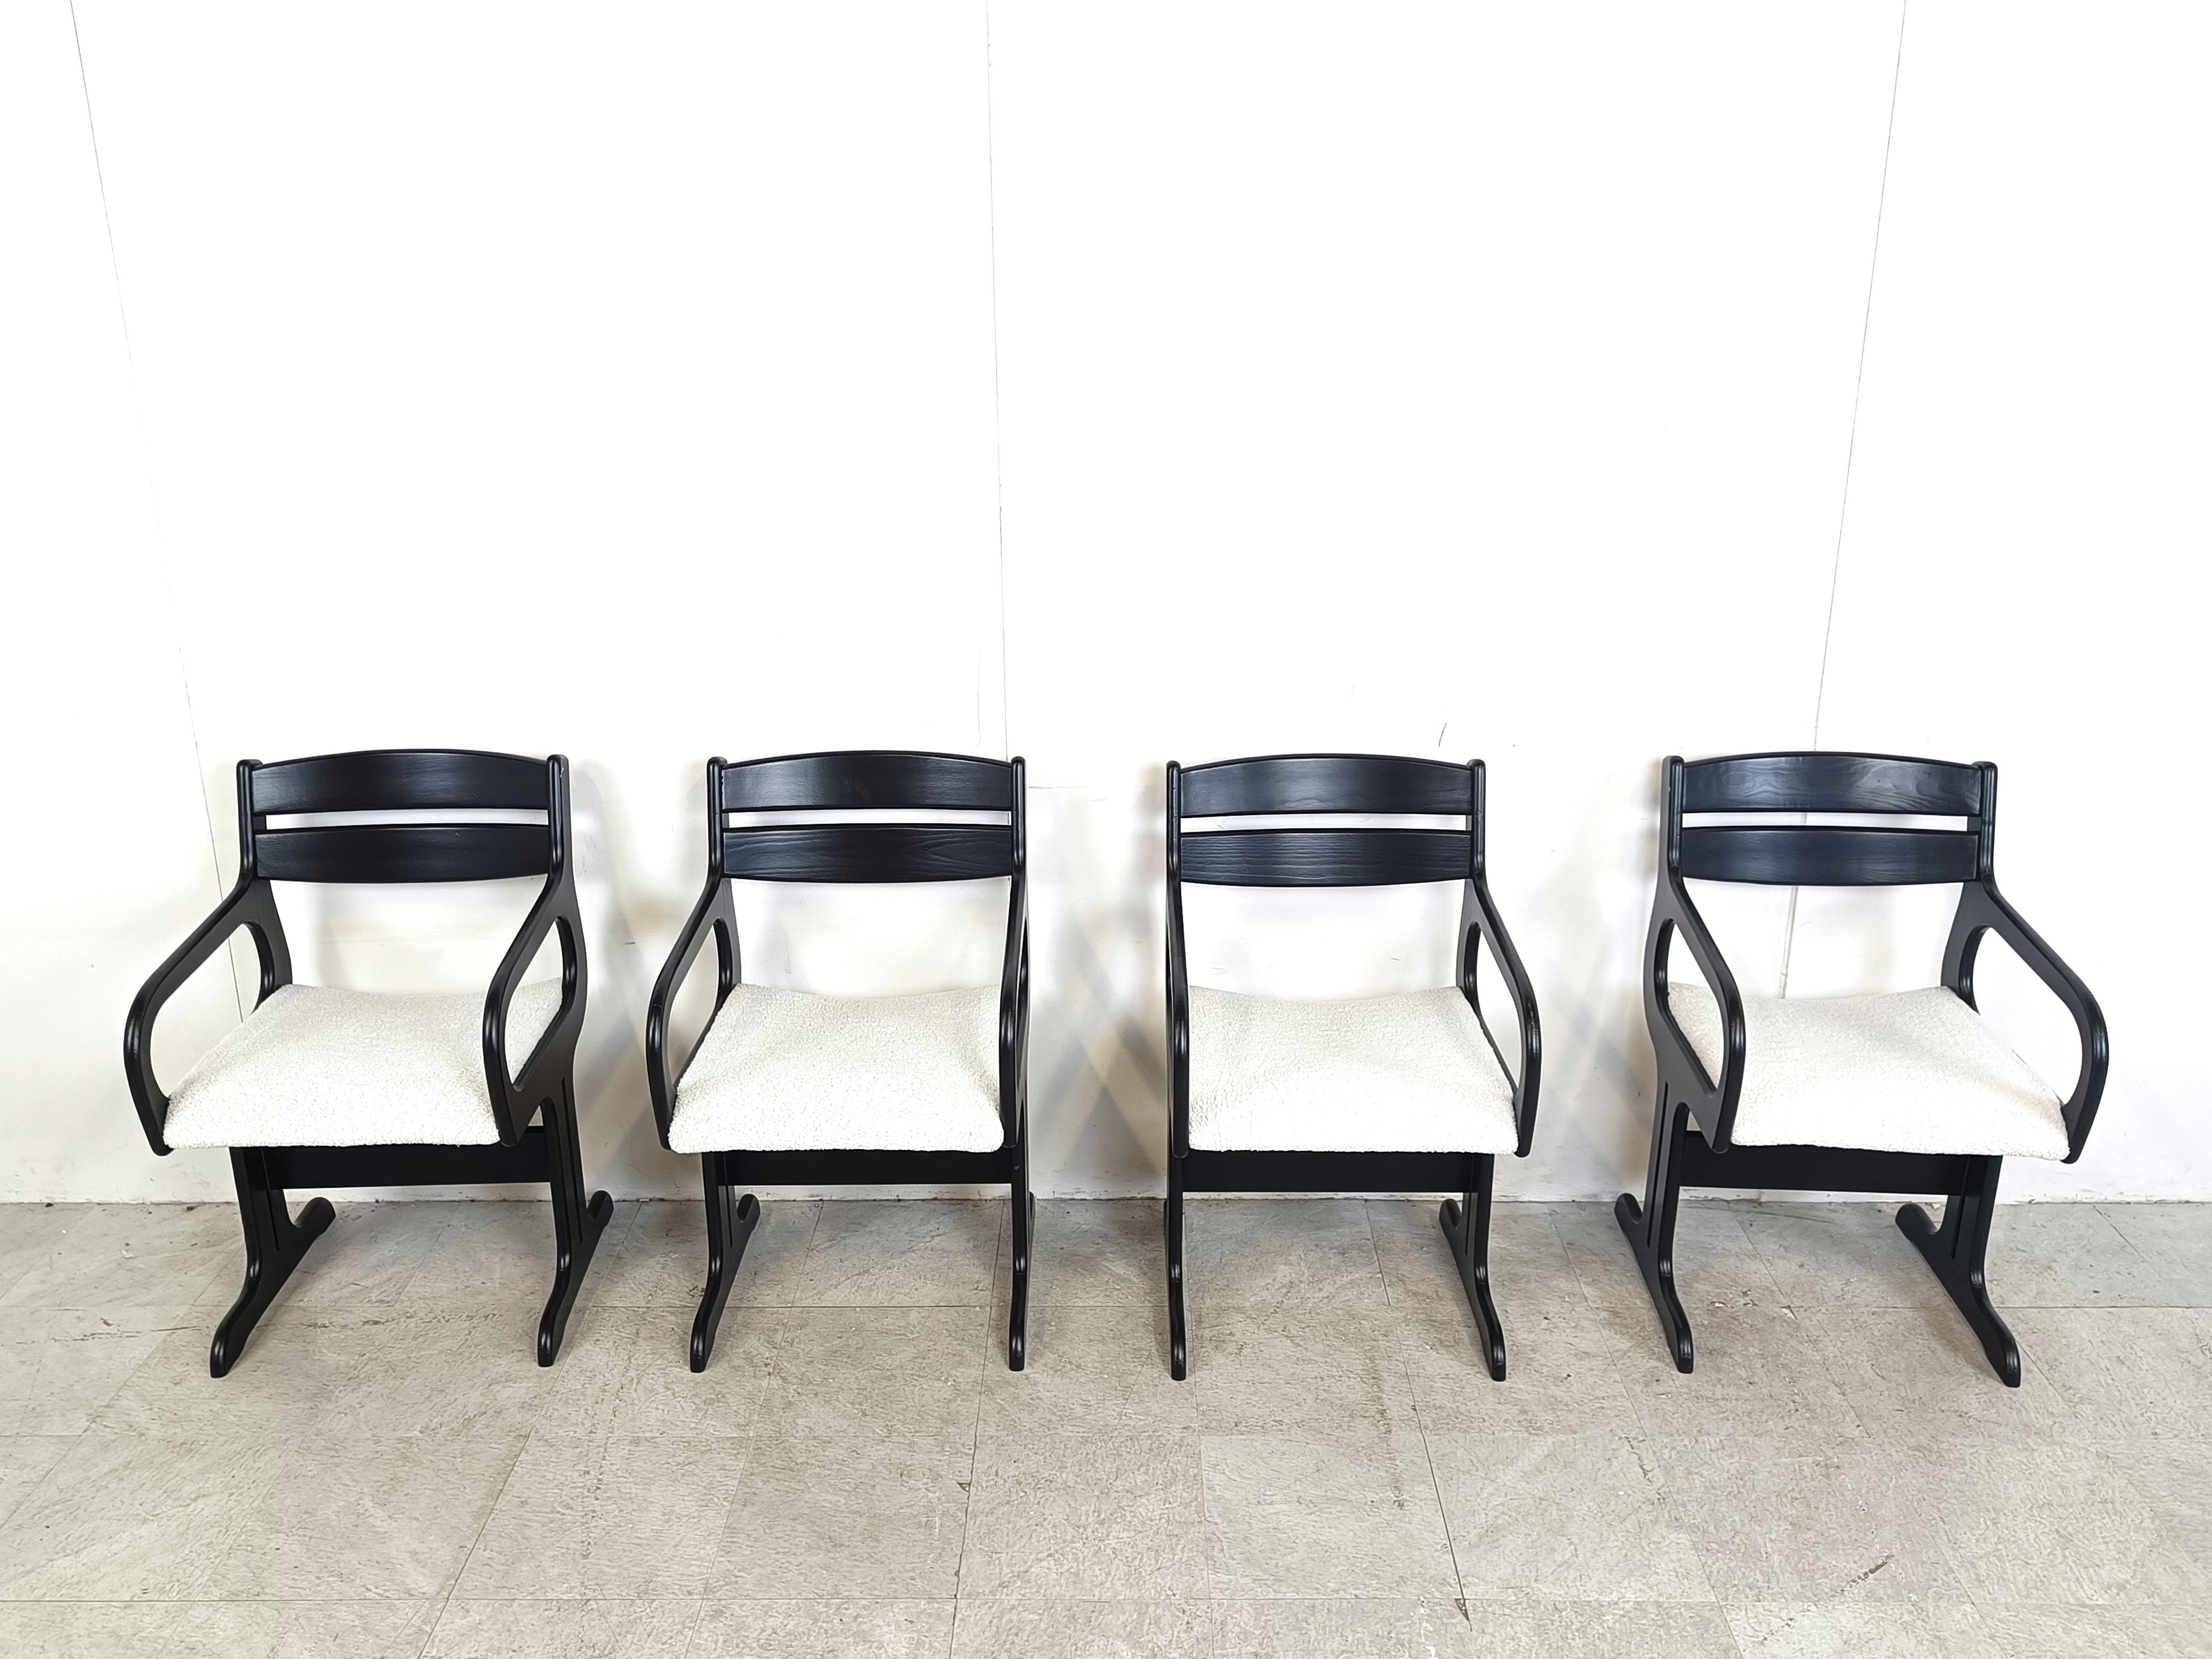 Chaises de salle à manger du milieu du siècle avec accoudoirs nouvellement tapissés en tissu bouclé.

Magnifique design de l'ère spatiale.

Les chaises sont en très bon état et très confortables pour s'asseoir pendant de longues périodes.

Années